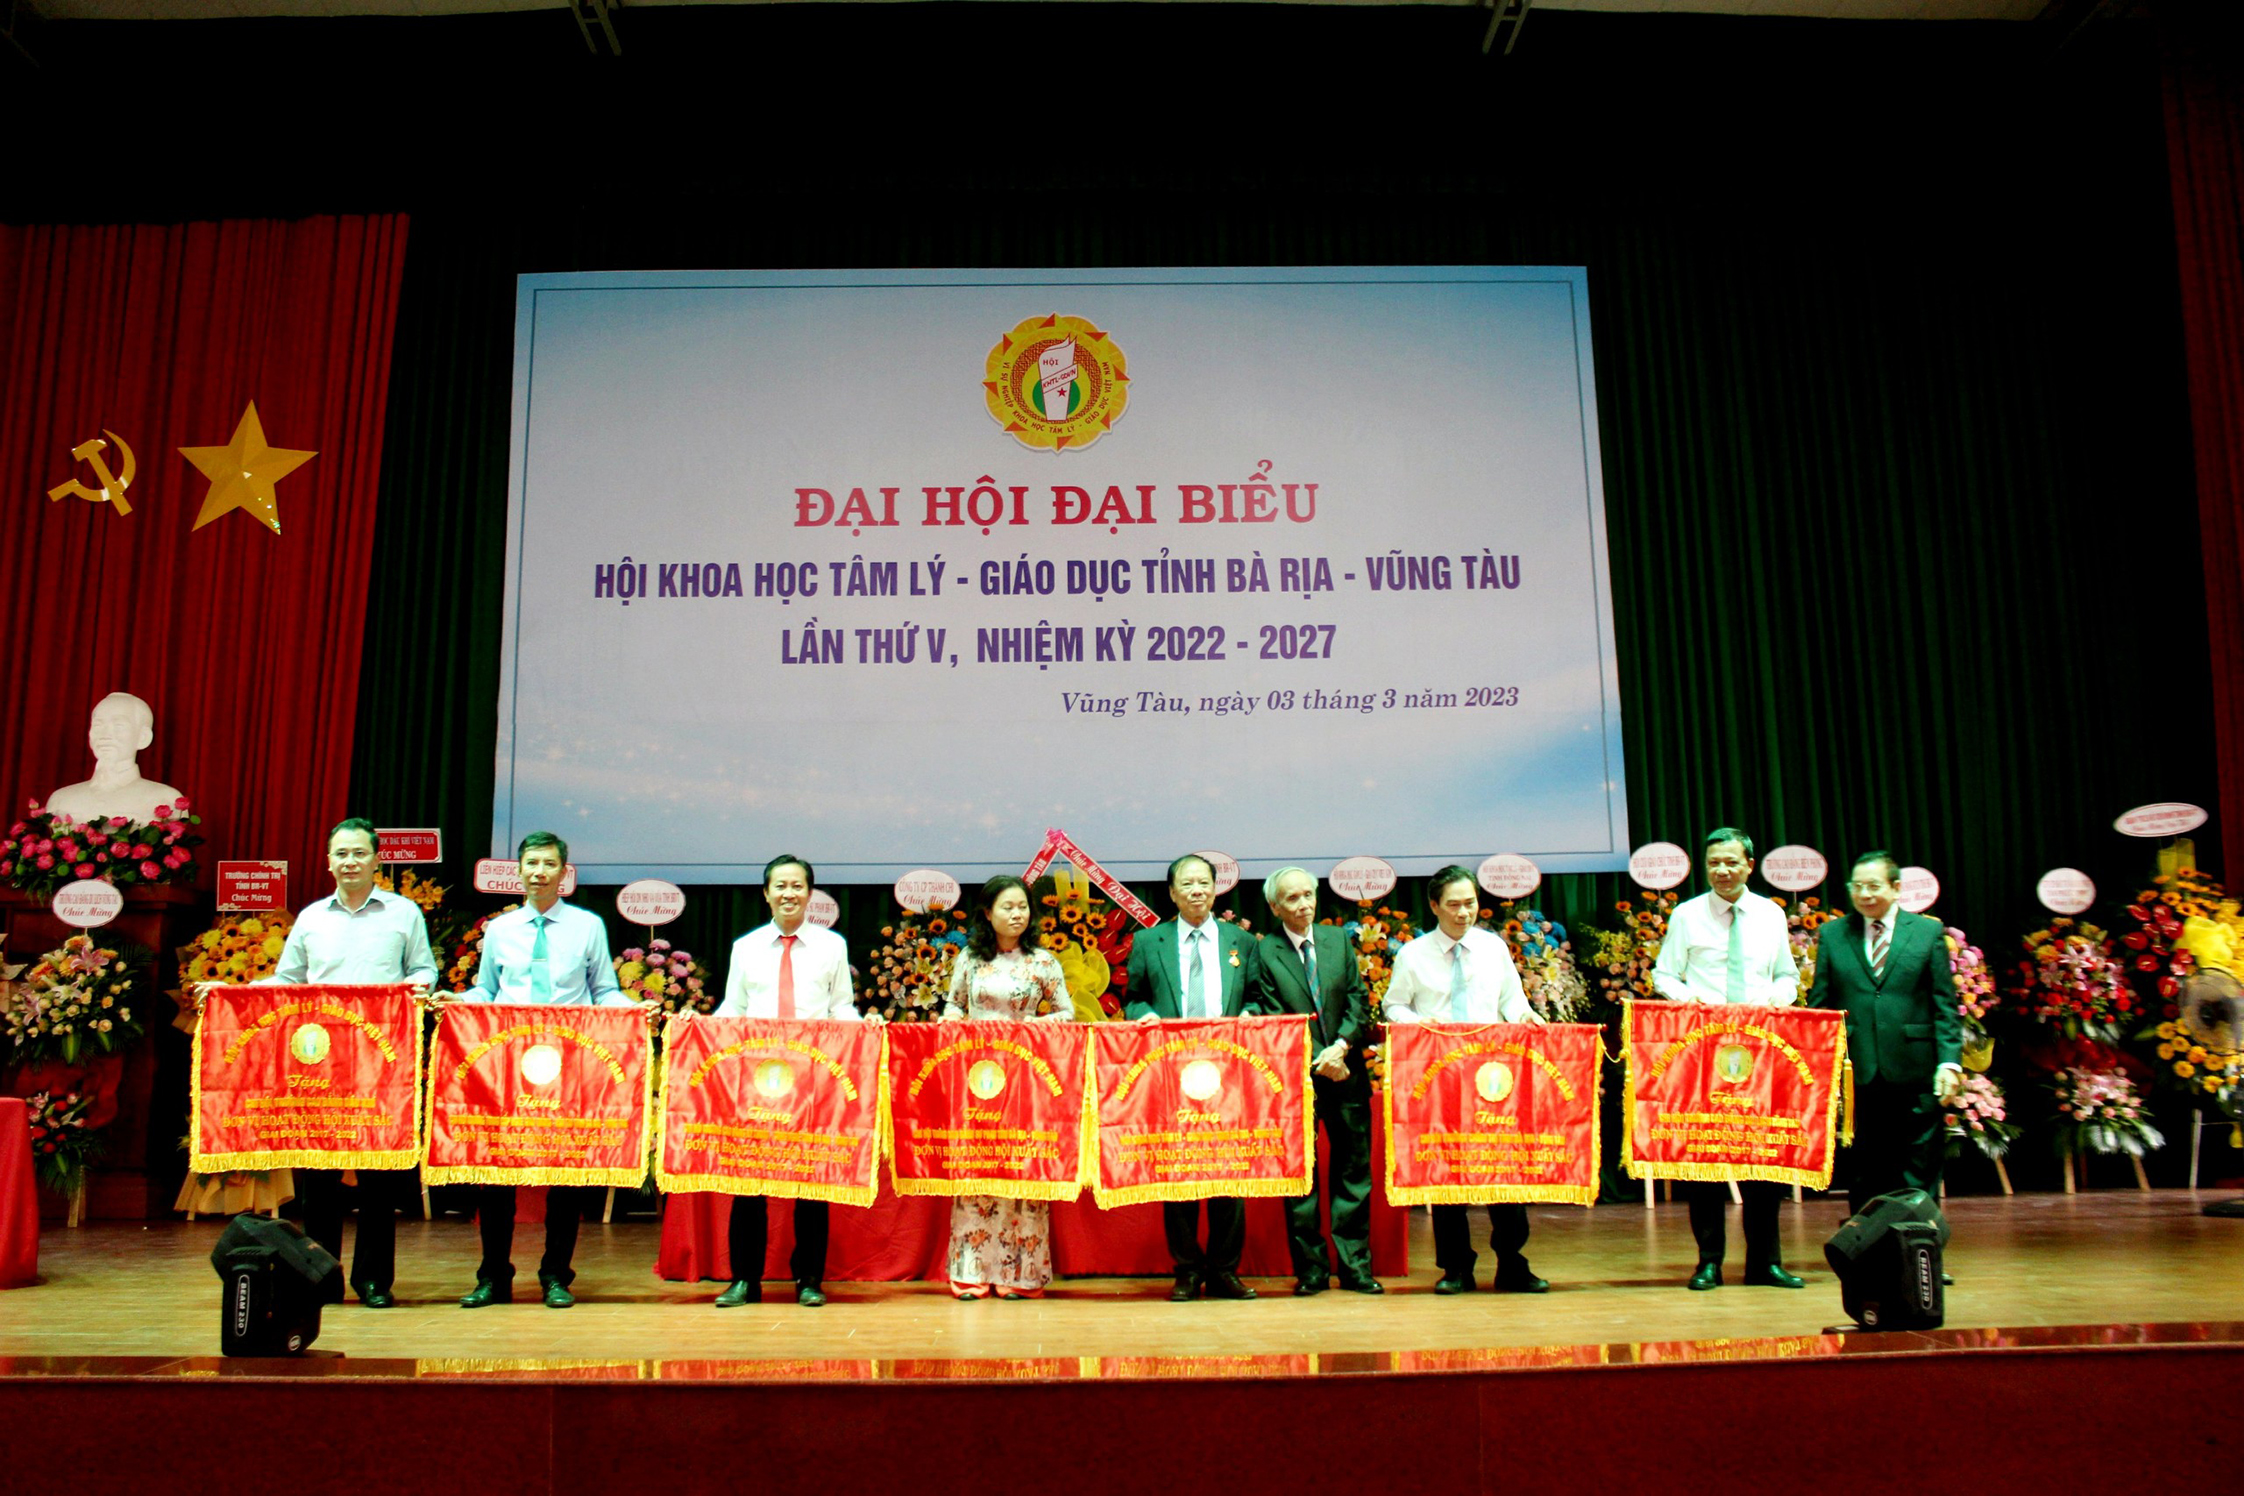 7 đơn vị được Hội Khoa học Tâm lý-Giáo dục Việt Nam tặng Cờ thi đua xuất sắc vì đã có thành tích xuất sắc trong hoạt động Nghiên cứu, Ứng dụng tri thức Tâm lý và Giáo dục học vào thực tiễn giai đoạn 2017-2022.